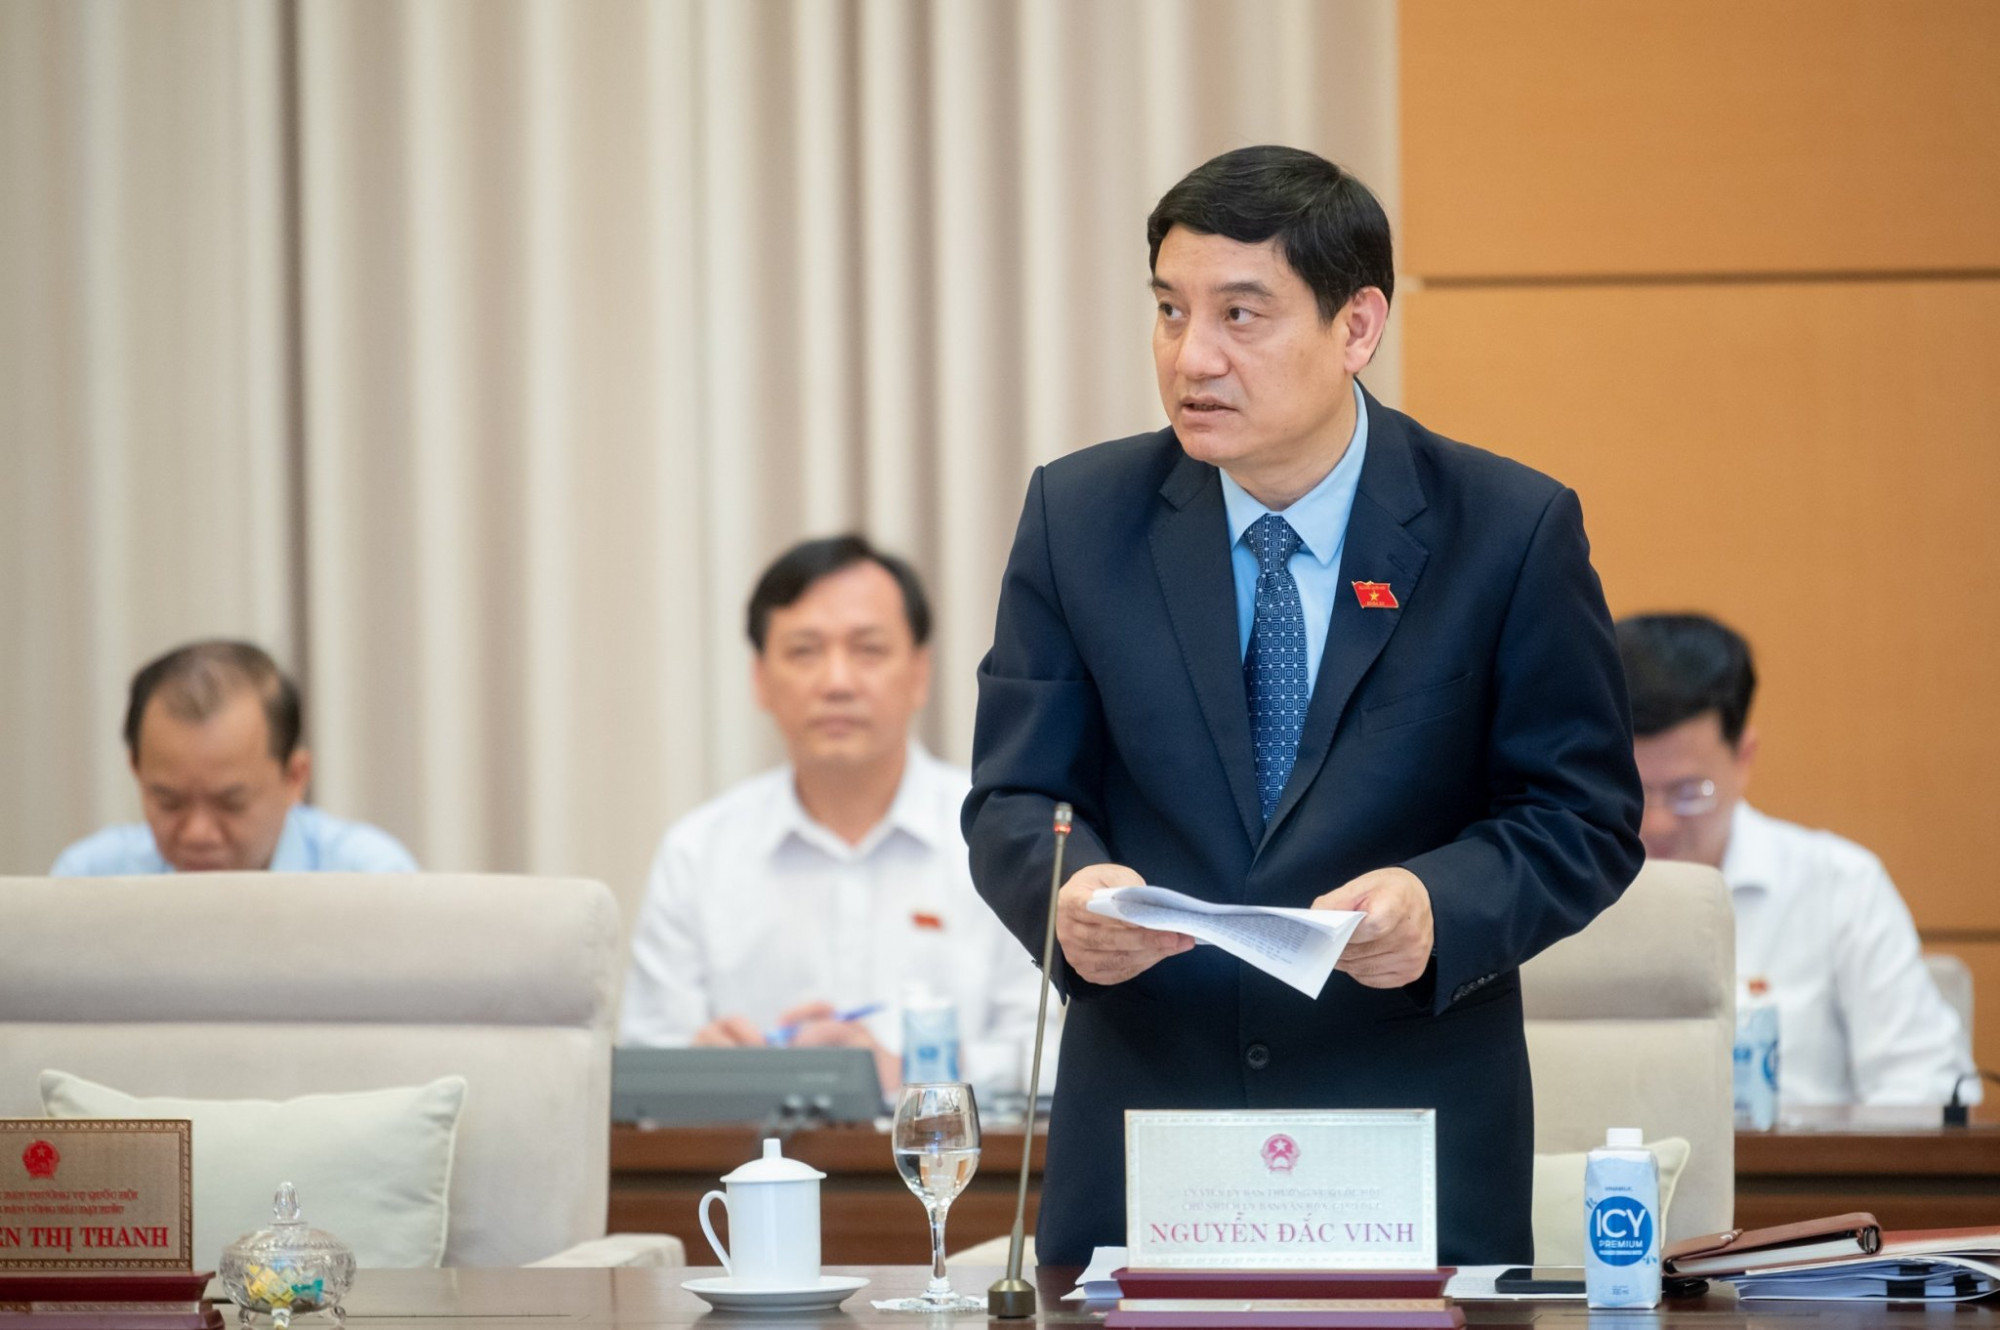 Ông Nguyễn Đắc Vinh trình bày báo cáo của đoàn giám sát về đổi mới chương trình, sách giáo khoa